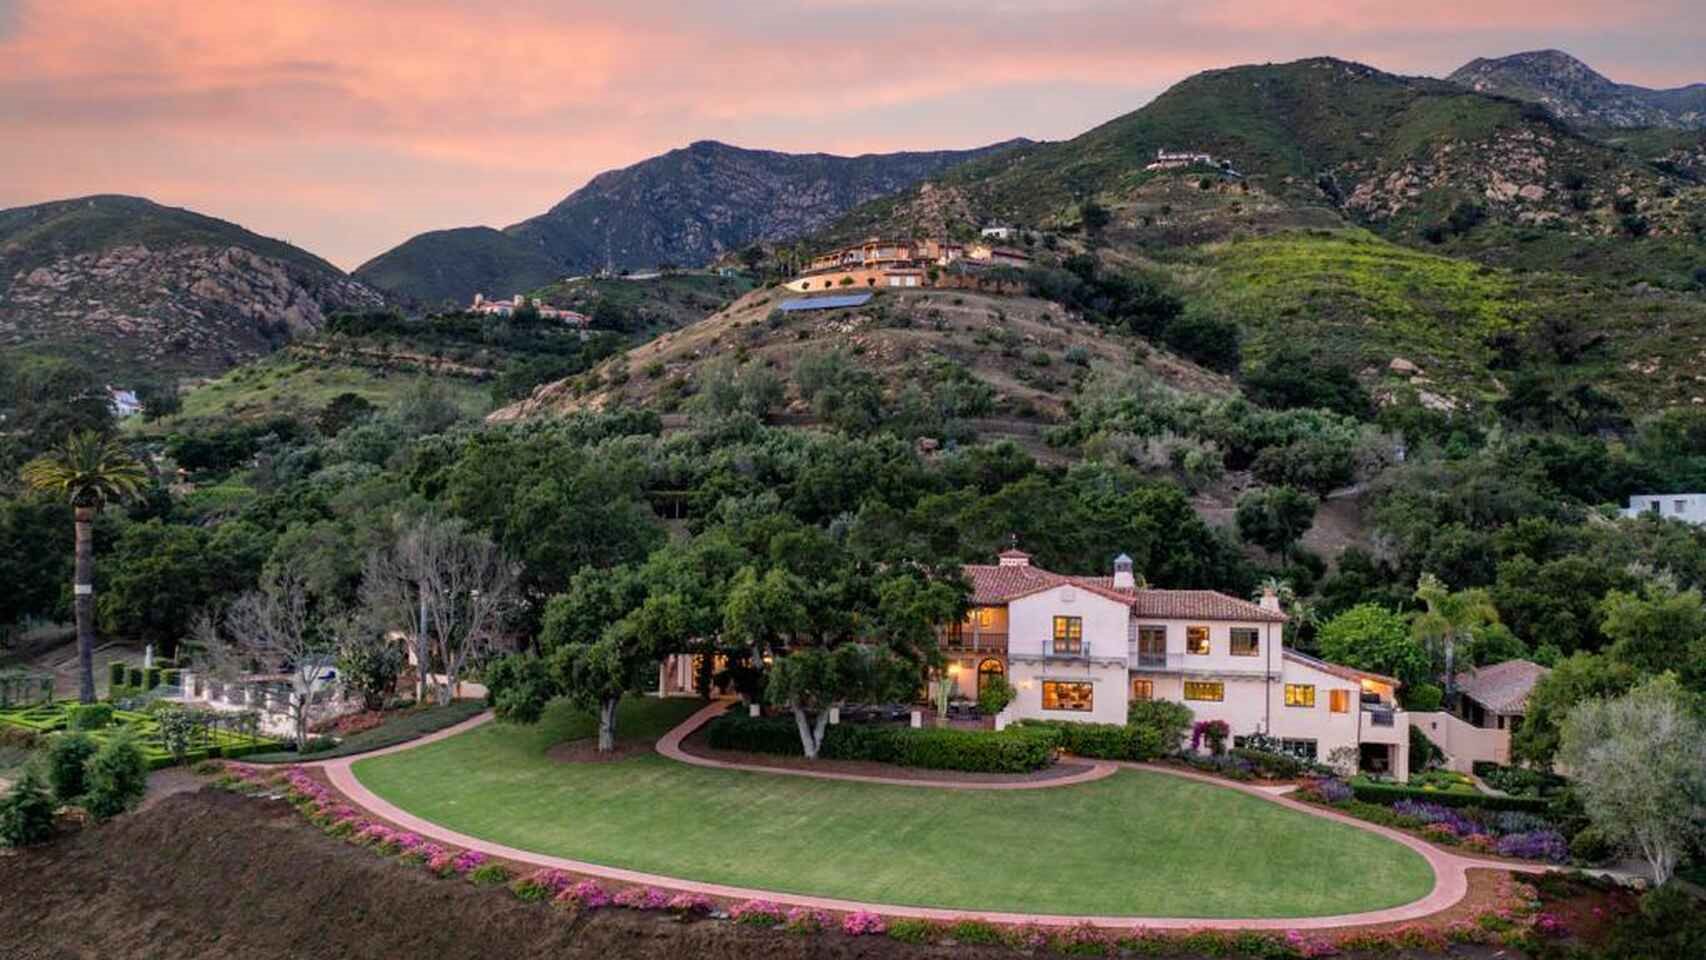 Vista aerea de la casa de Orlando Bloom y Katy Perry en Montecito al atardecer